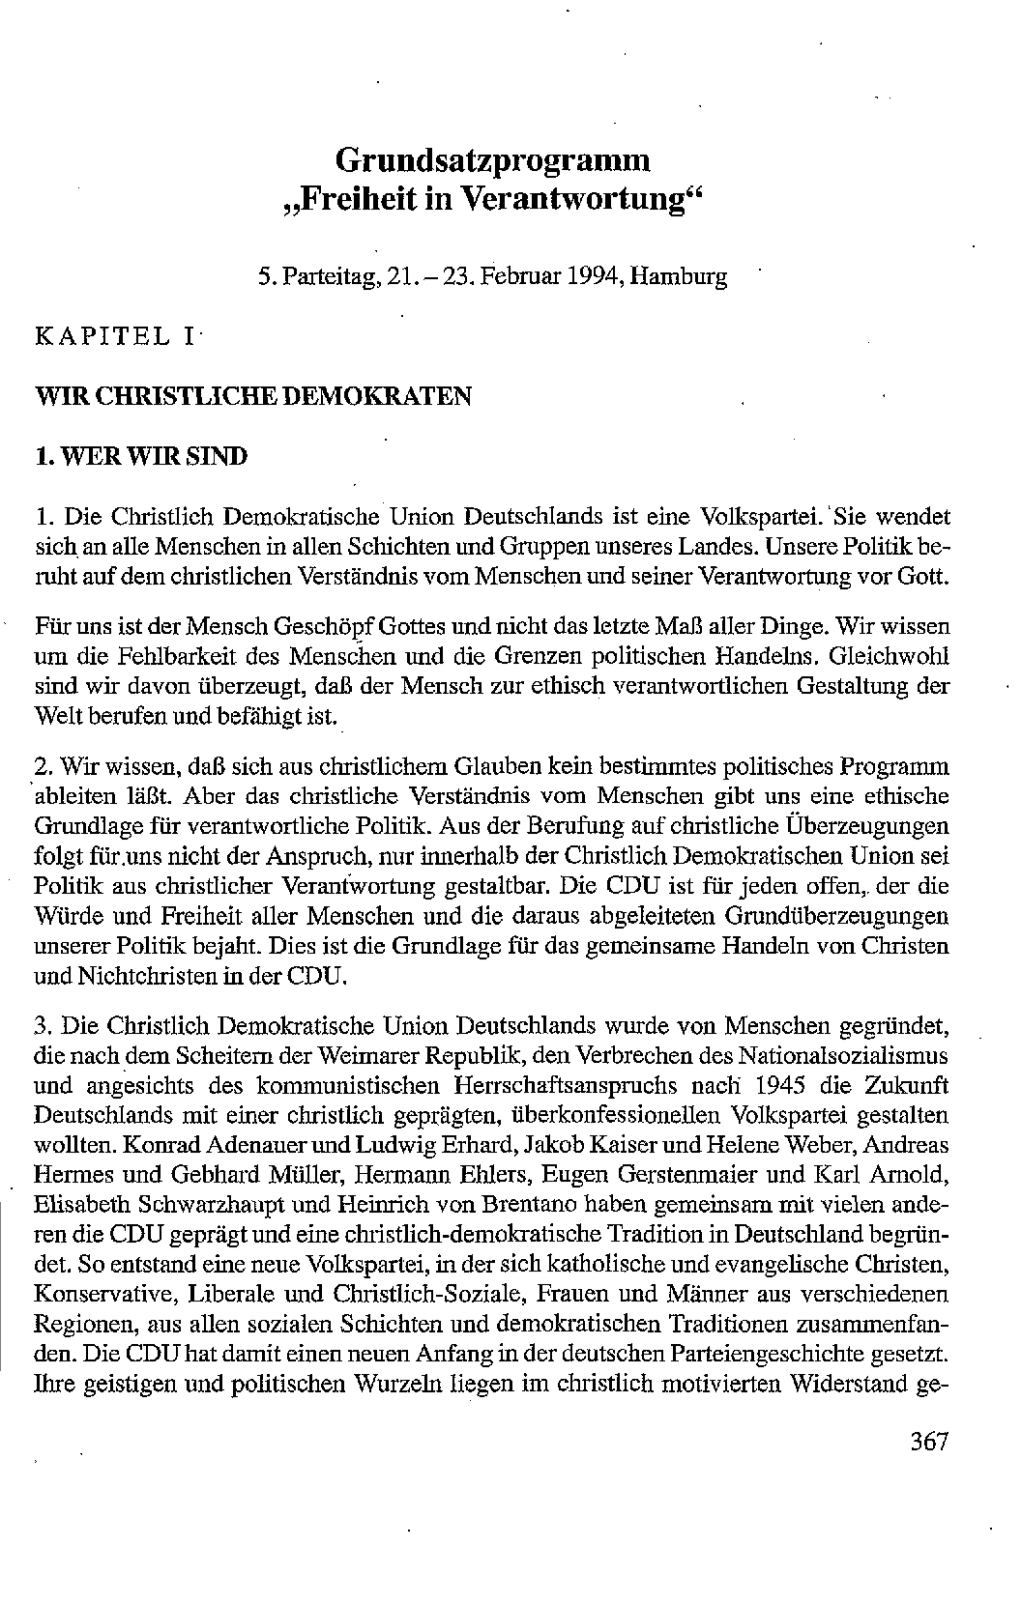 Grundsatzprogramm "Freiheit in Verantwortung" Hamburg 1994